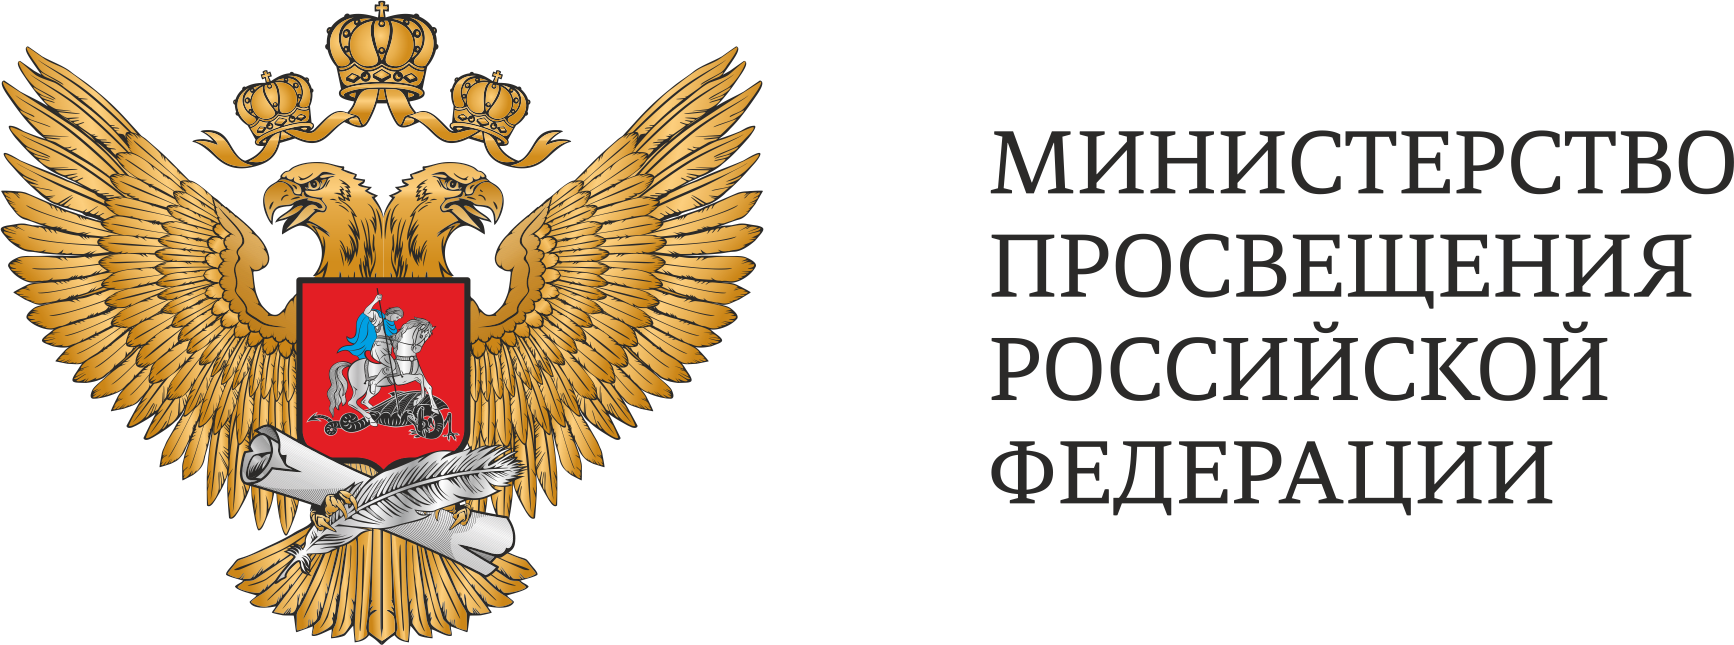 Логотип министерства просвещения..